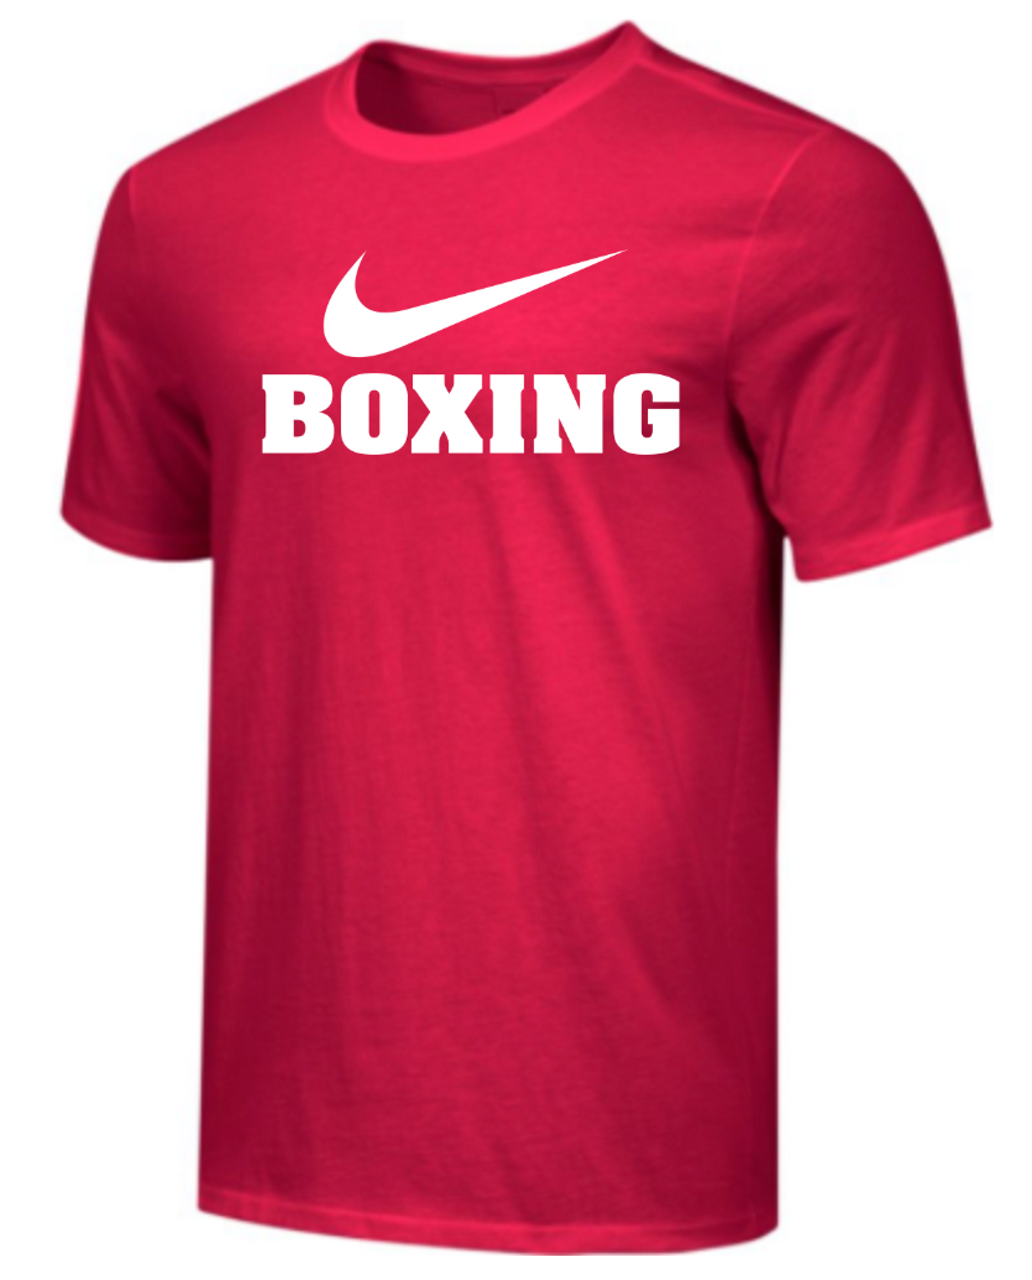 Найк турция сайт. Nike Boxing футболка. Nike Turkey. Футболки мужские найк бокс ретро.